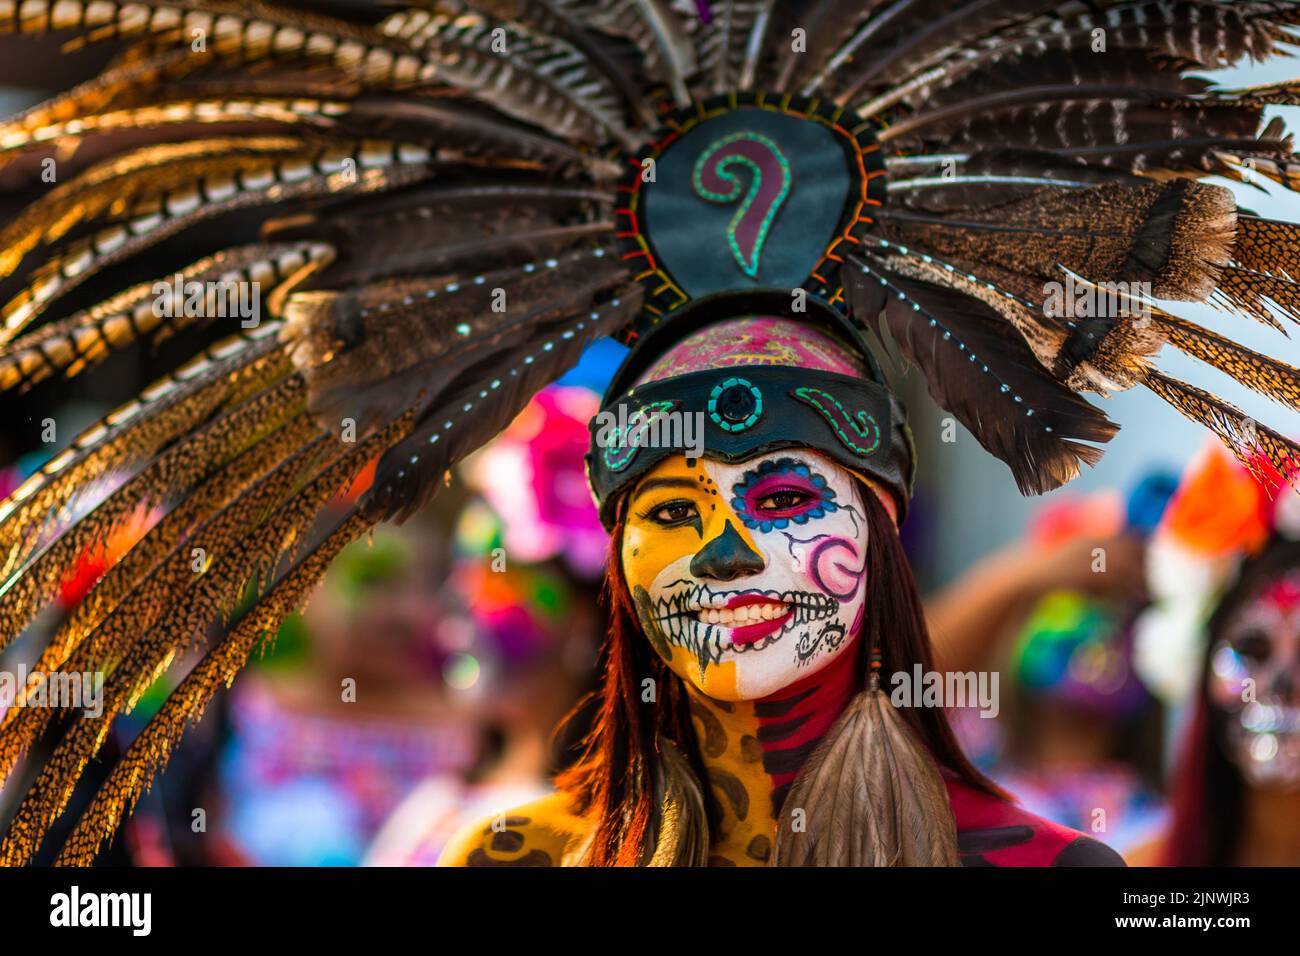 Ein mexikanisches Mädchen, bekleidet als La Catrina und mit einem Kopfschmuck aus aztekischen Federn, nimmt an den Feierlichkeiten zum Tag der Toten in Taxco, Mexiko, Teil. Stockfoto